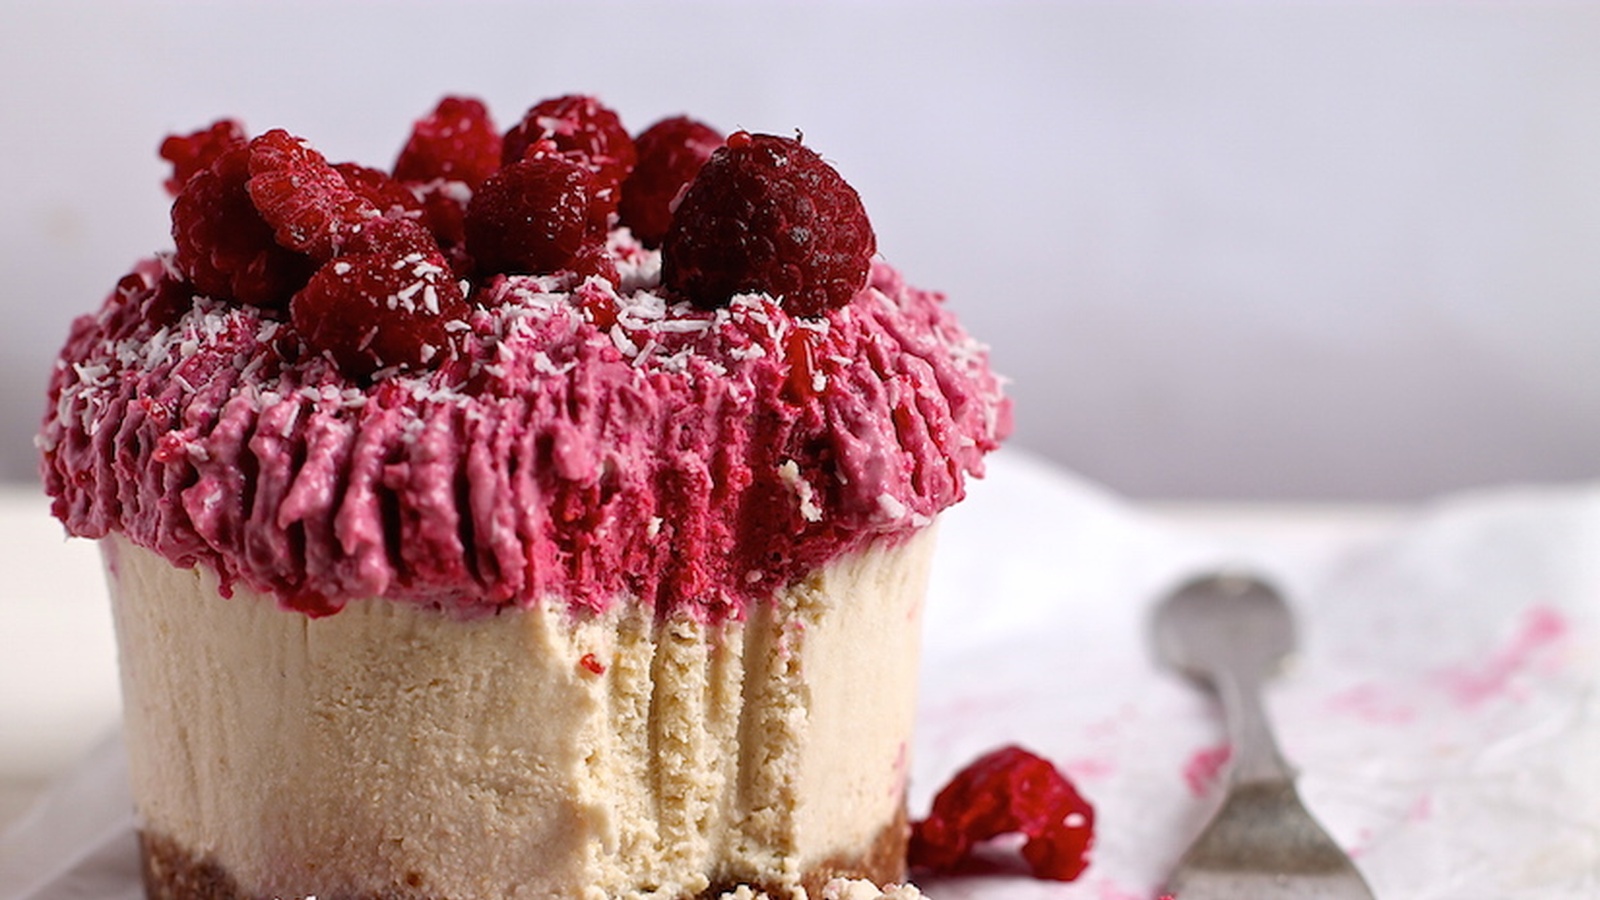 Raspberry And White Chocolate ‘Cheesecake’ (Valentine’s Day Recipe)